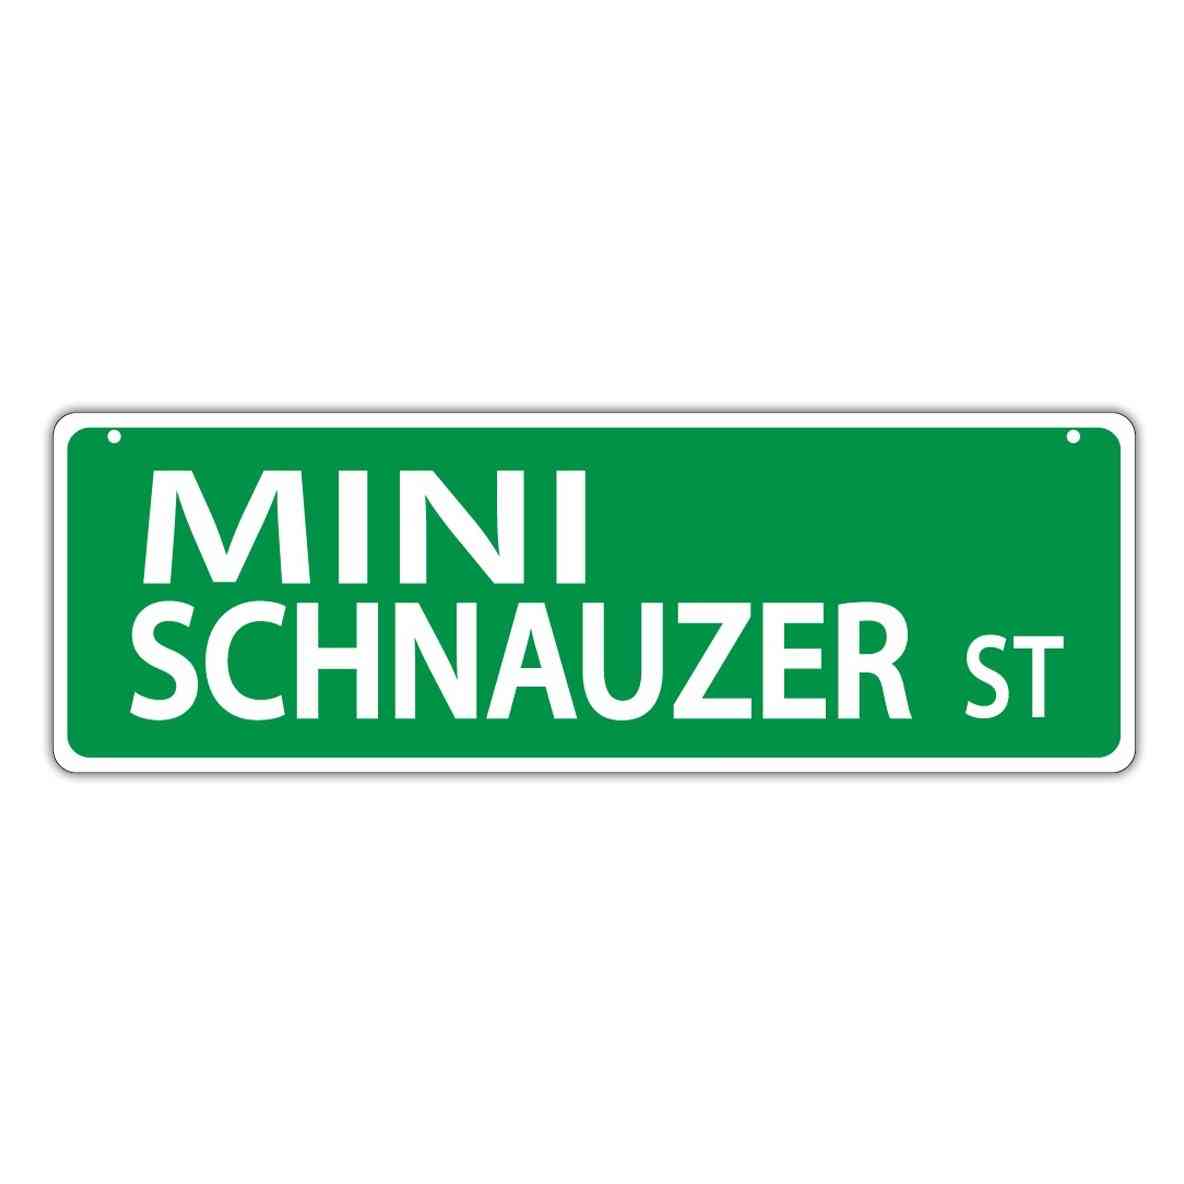 Street Sign - Mini Schnauzer